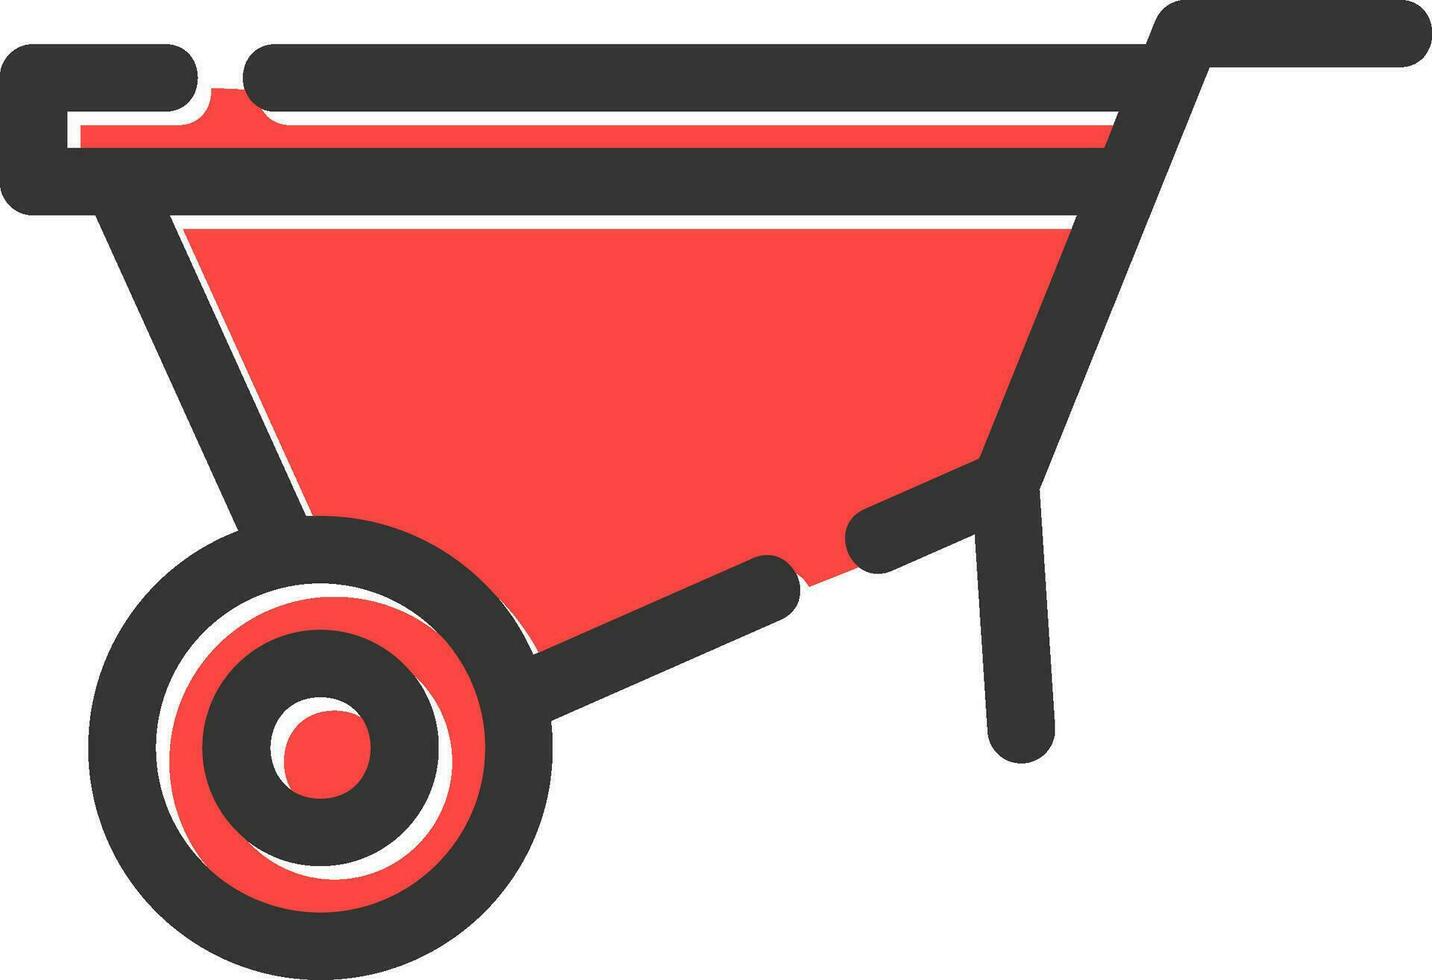 Wheelbarrow Creative Icon Design vector